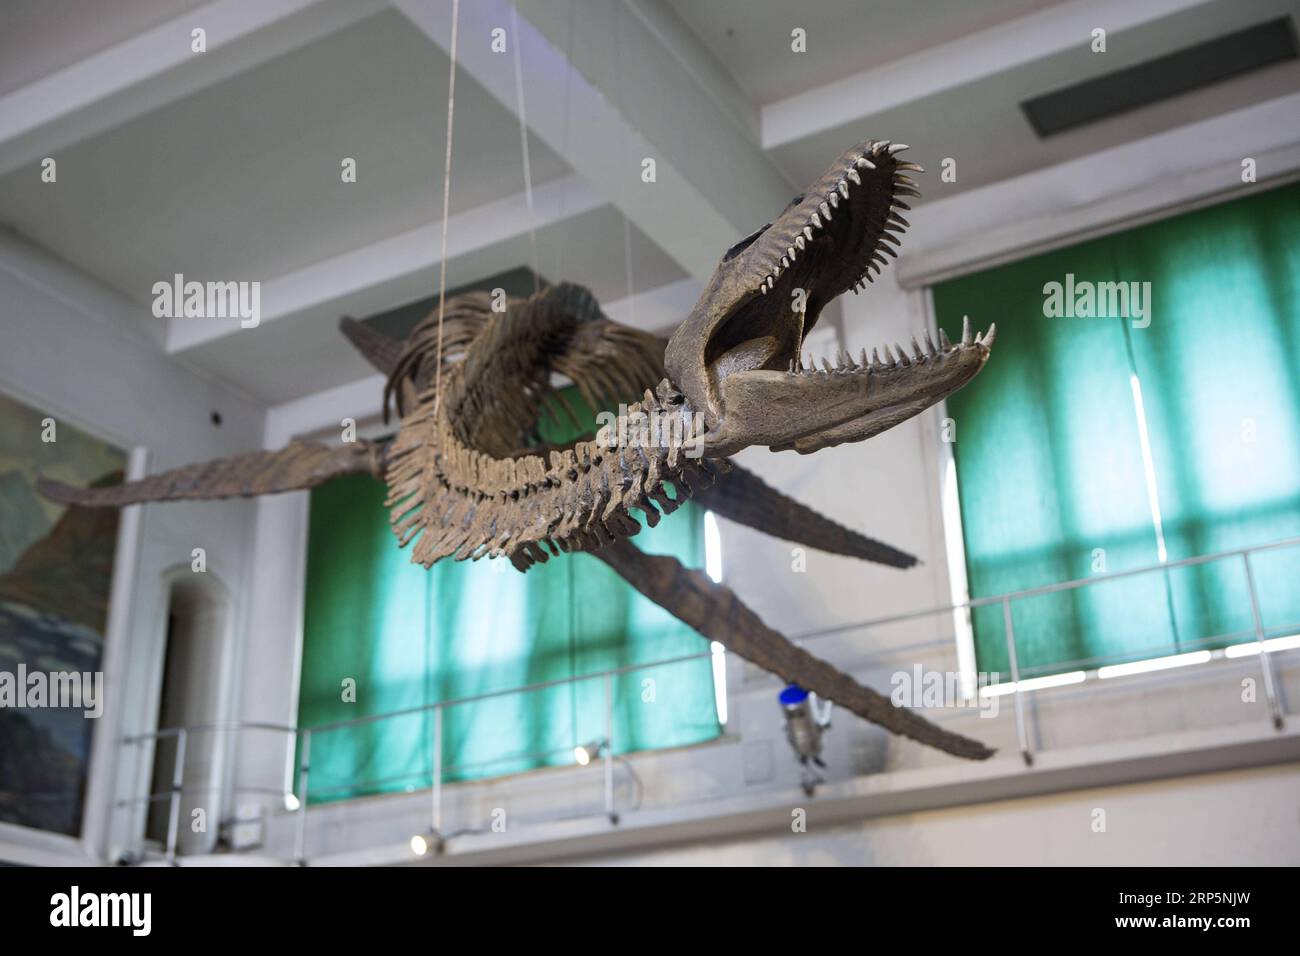 (181220) -- BUENOS AIRES, 20 de diciembre de 2018 -- Réplica de un esqueleto de 65 millones de años de antigüedad de un reptil marino de plesiosaurio se exhibe en la sala del museo en el Museo de Ciencias Naturales Bernardino Rivadavia en Buenos Aires, Argentina, el 19 de diciembre de 2018. El fósil se encuentra en rocas del período Cretácico sumergidas en el lago Argentino al pie de la cordillera de los Andes. El fósil mide nueve metros de largo, cada aleta mide 1,3 metros. ) ARGENTINA-BUENOS AIRES-RÉPLICA-EXHIBICIÓN DE DINOSAURIOS MARTINXZABALA PUBLICATIONXNOTXINXCHN Foto de stock